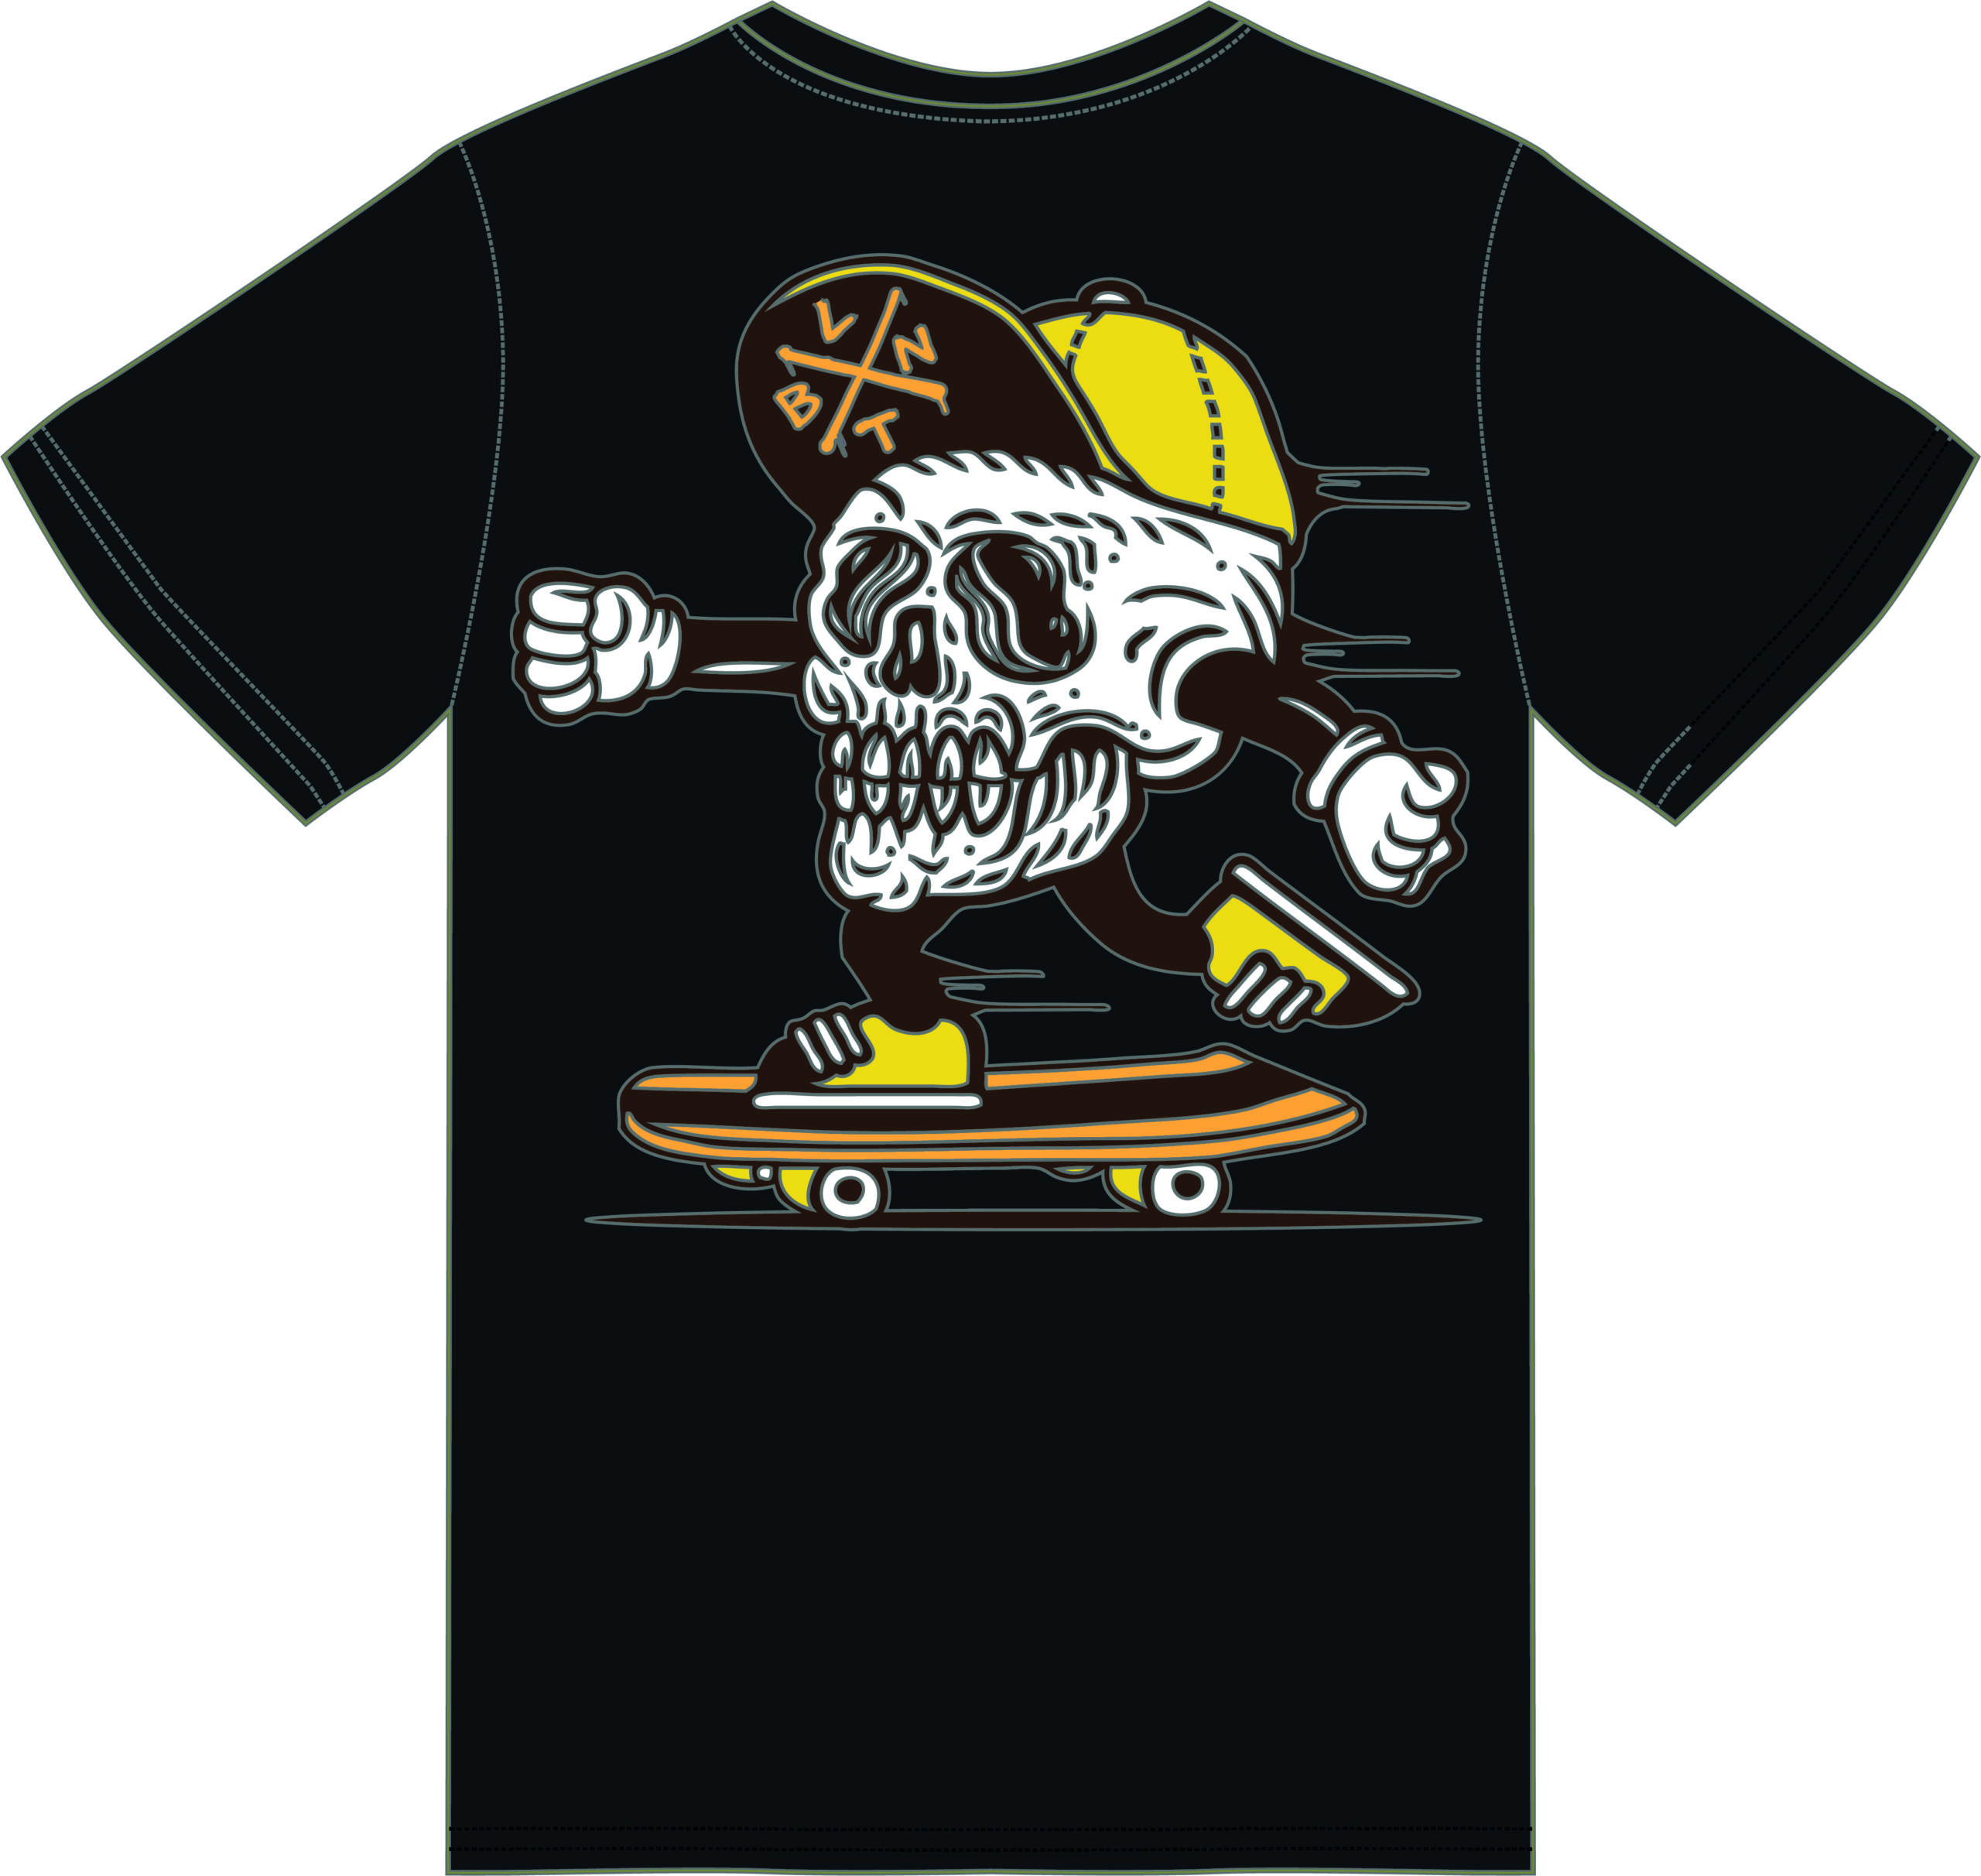 BLNT - T-Shirt Skate Skull - Black - Retro